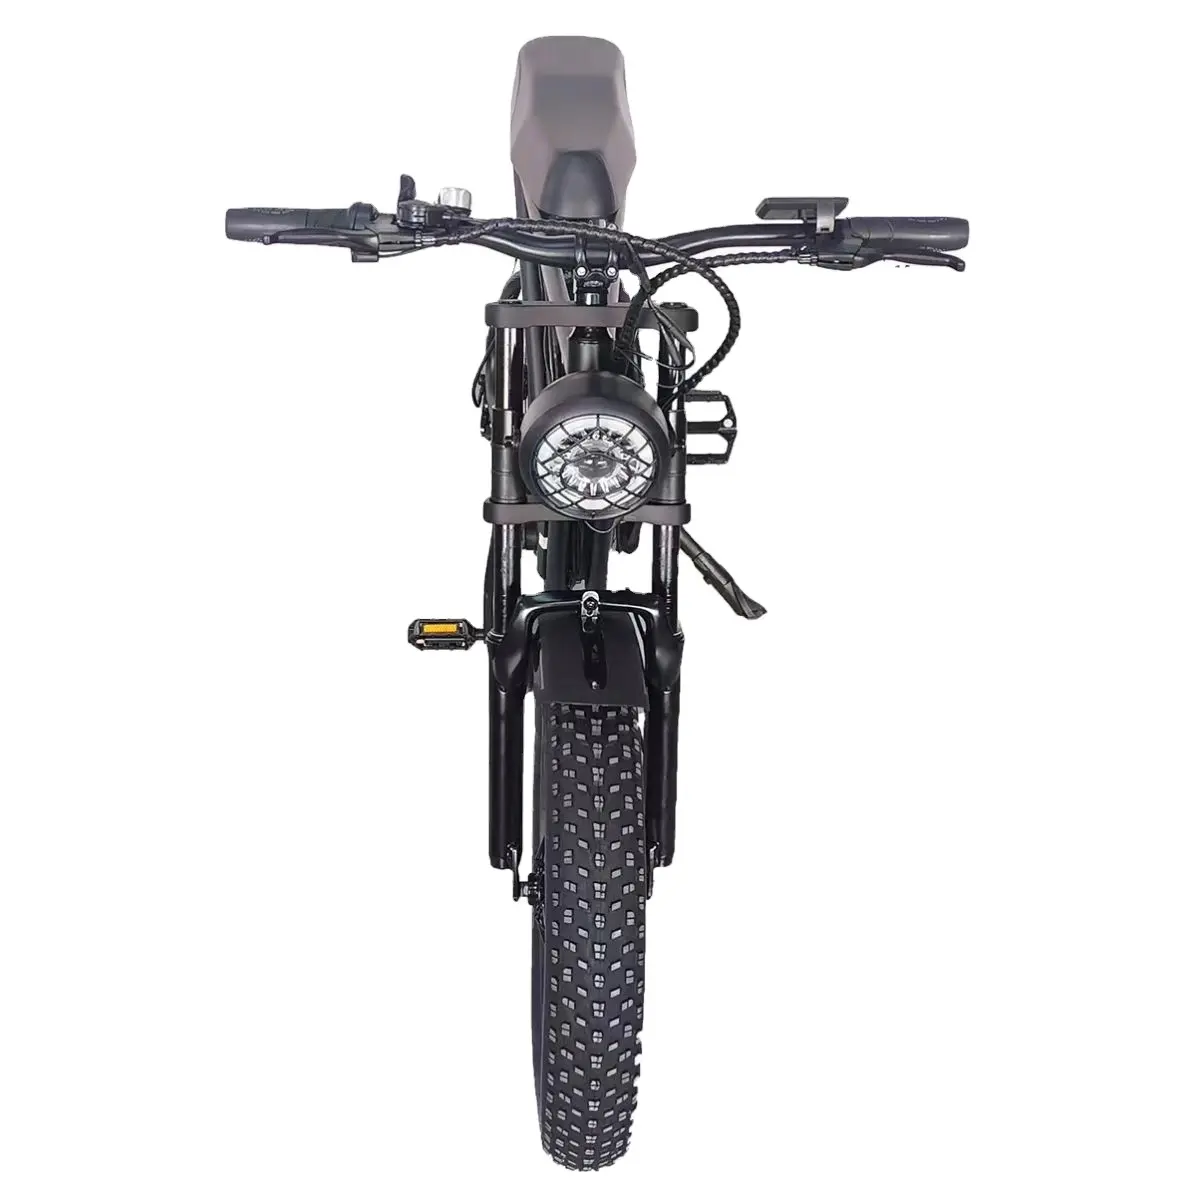 Nuovo arrivo Kontax full suspension bici elettrica in fibra di carbonio 48V 500W Shimano set bicicletta elettrica a motore centrale